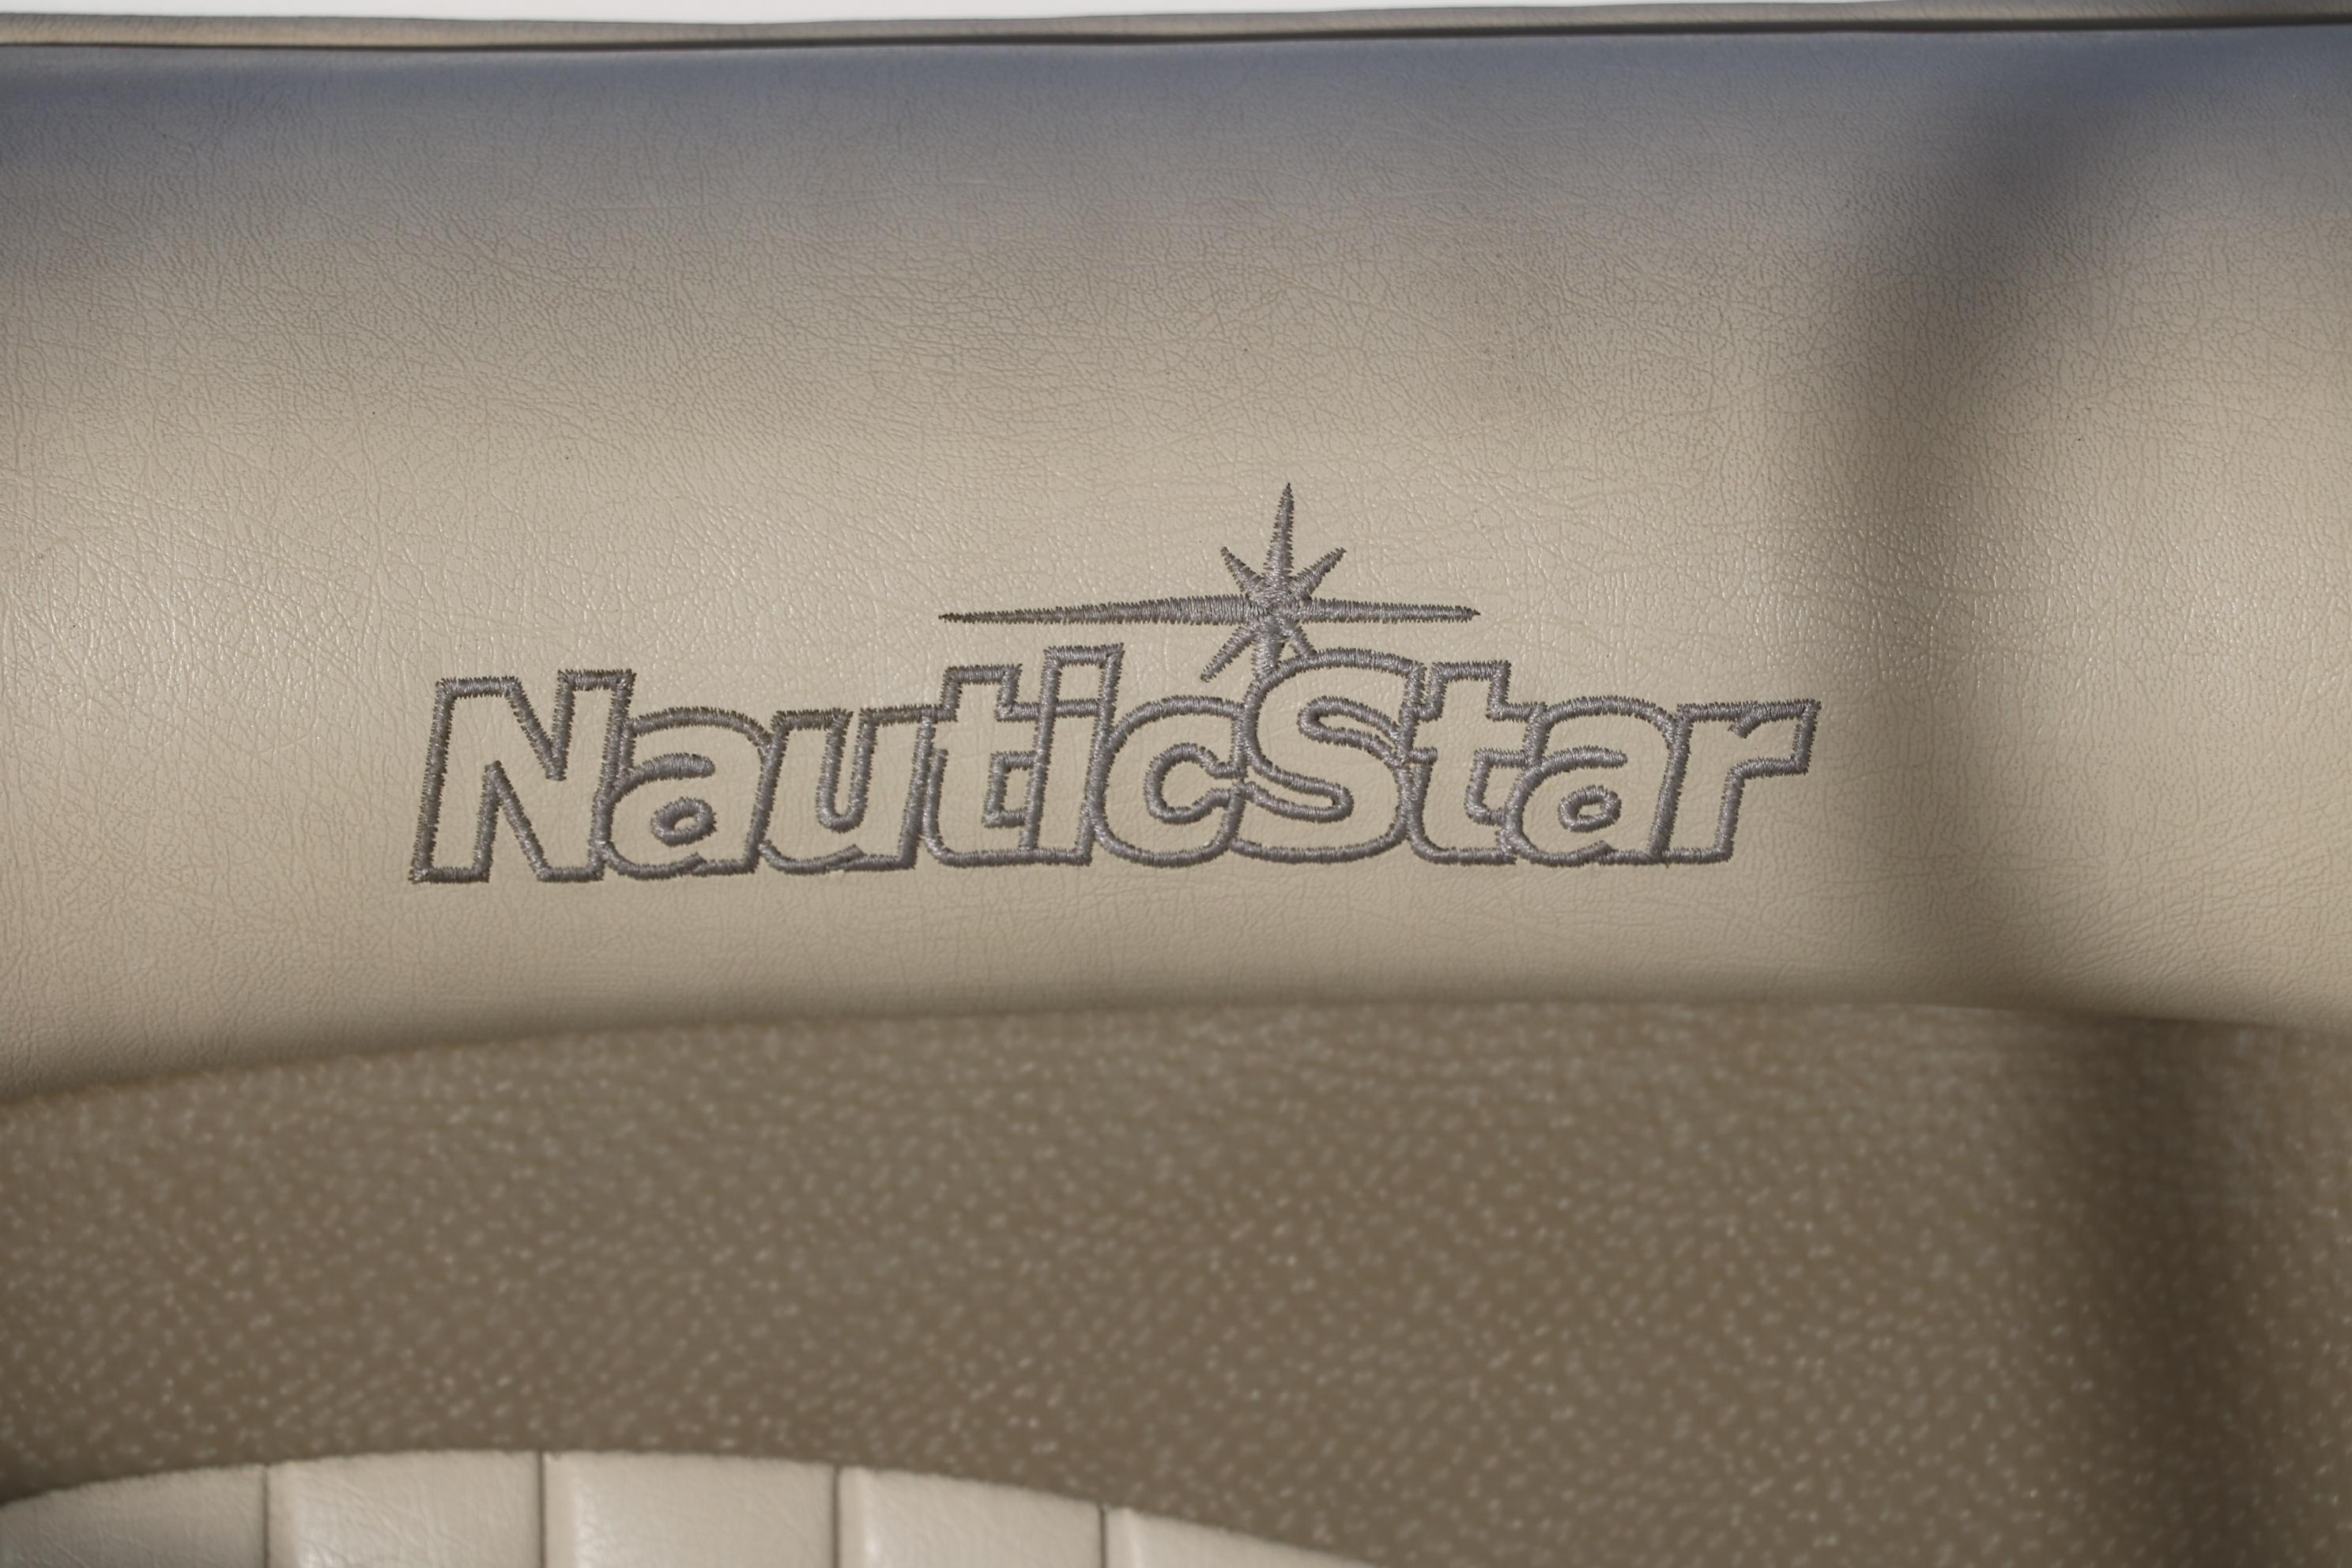 2008 NauticStar 232 DC I/O